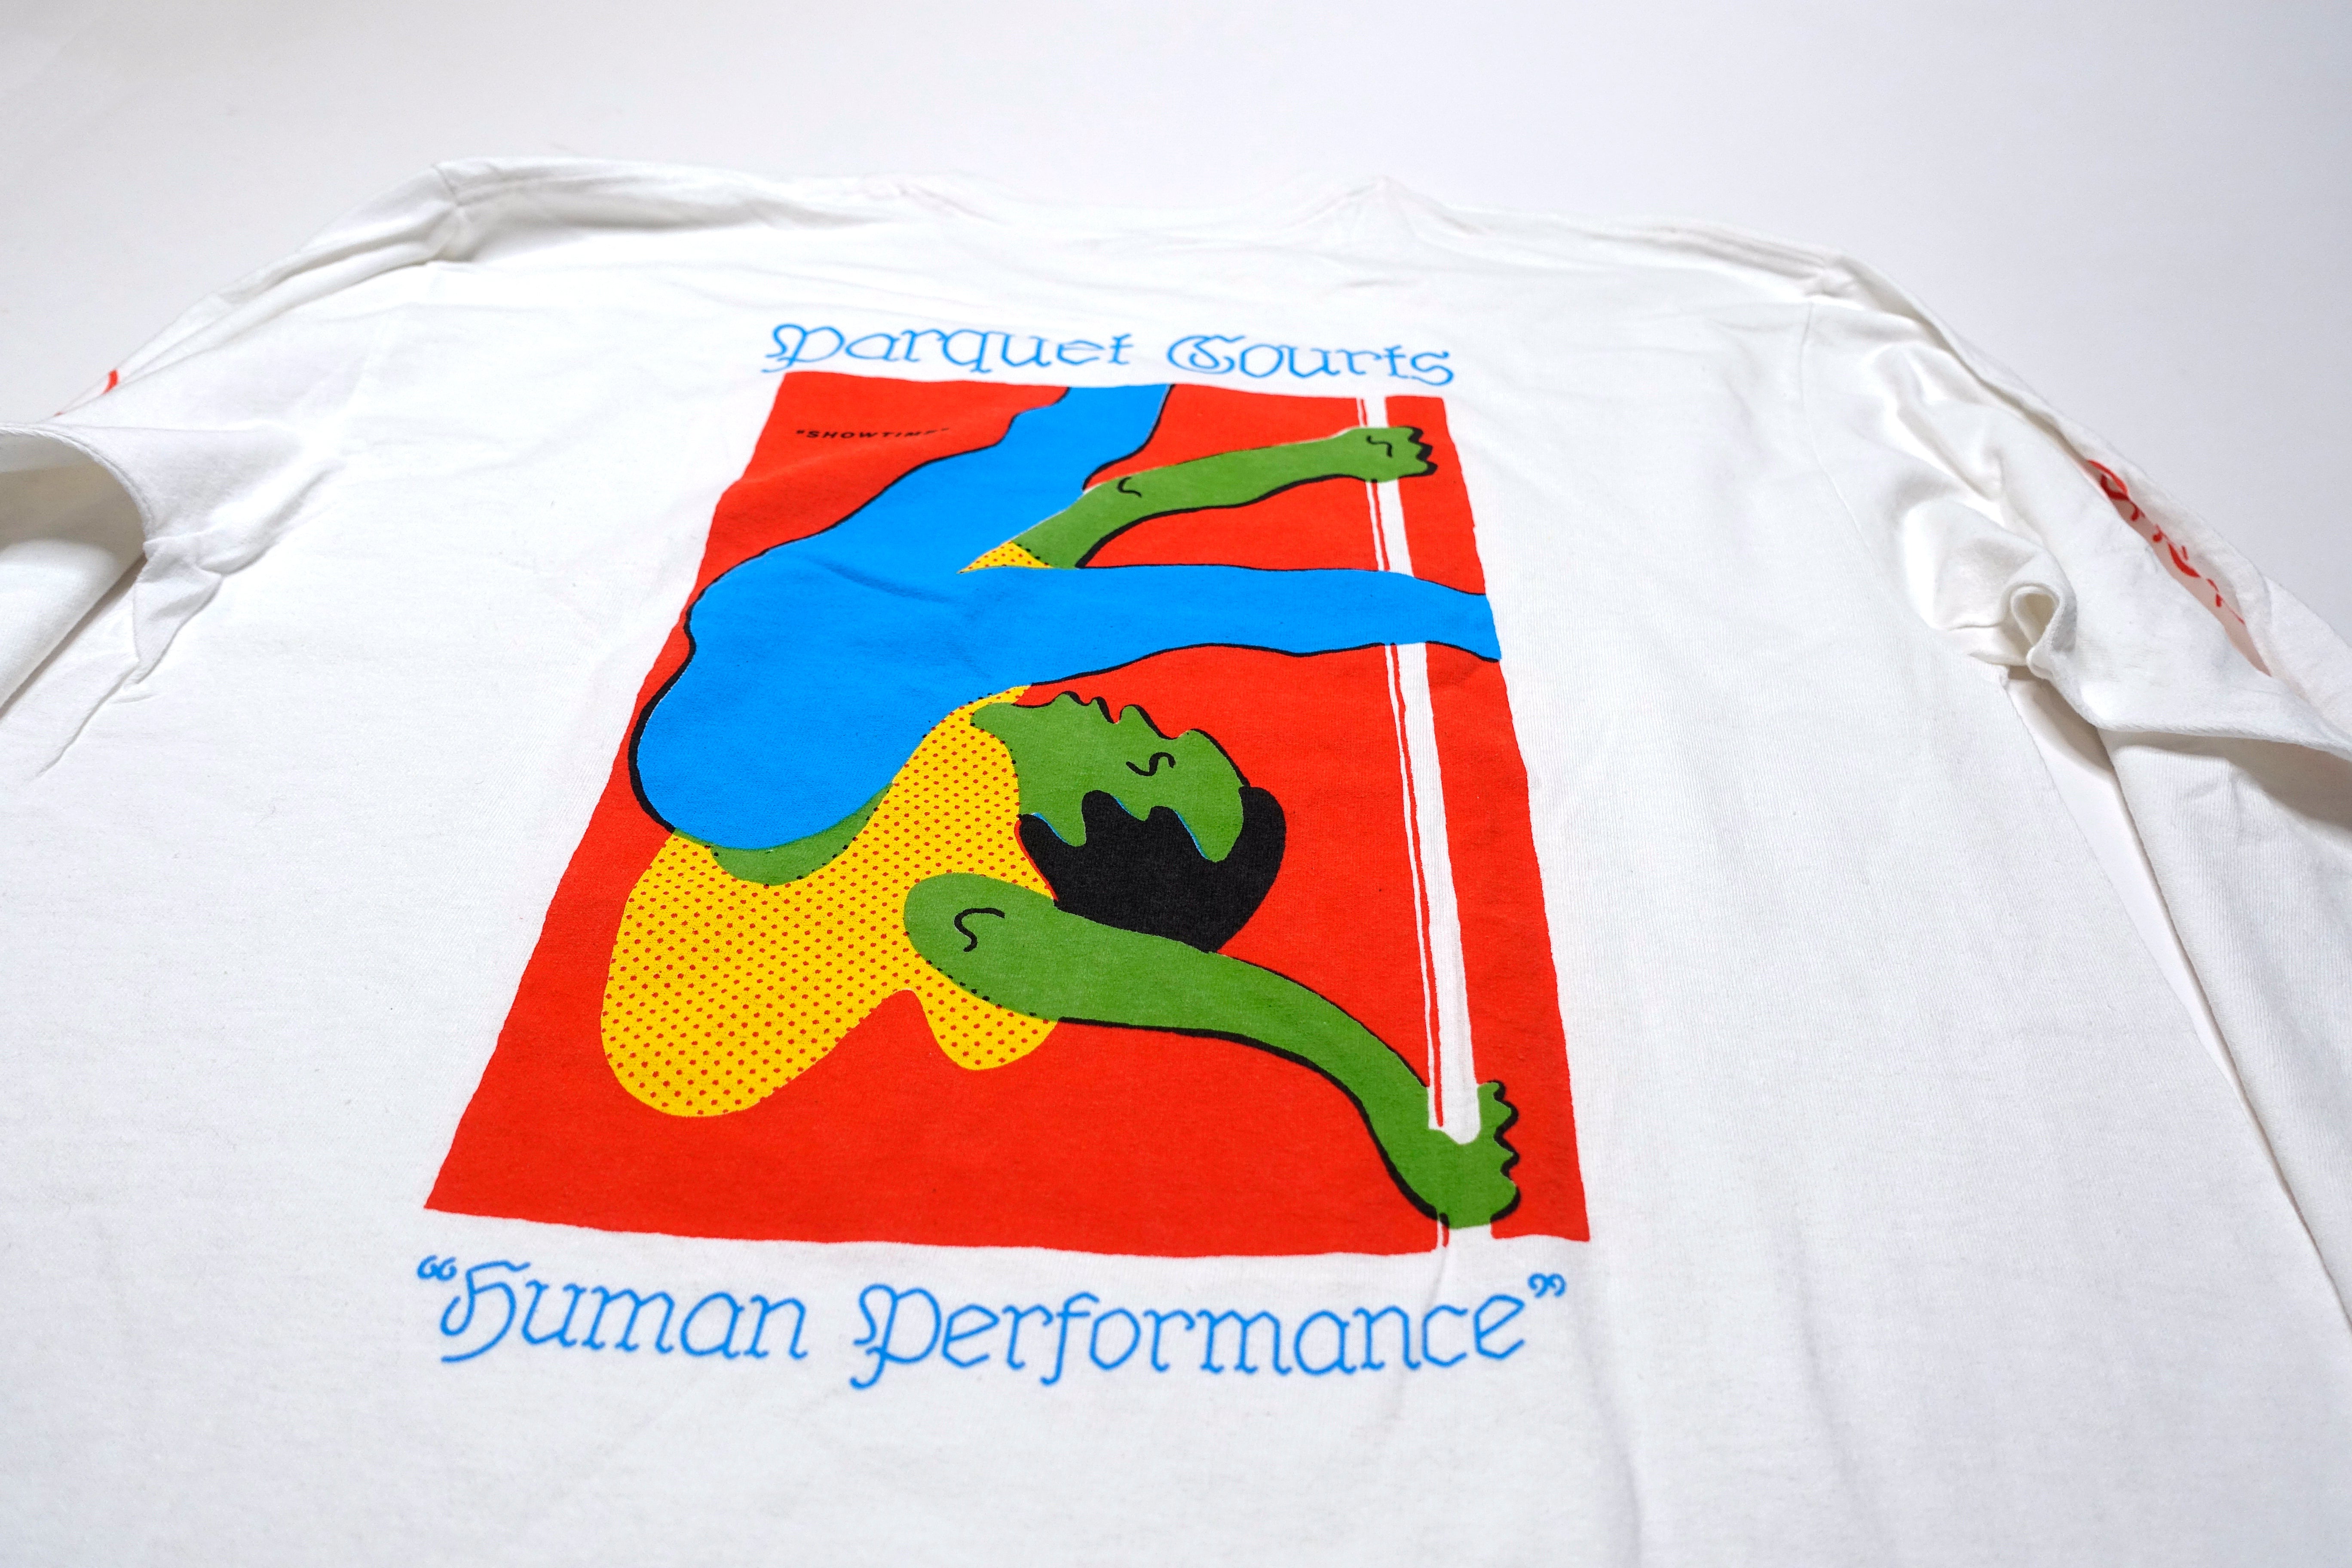 Parquet Courts - Showtime! / Human Performance 2016 Tour Long Sleeve Shirt Size Large